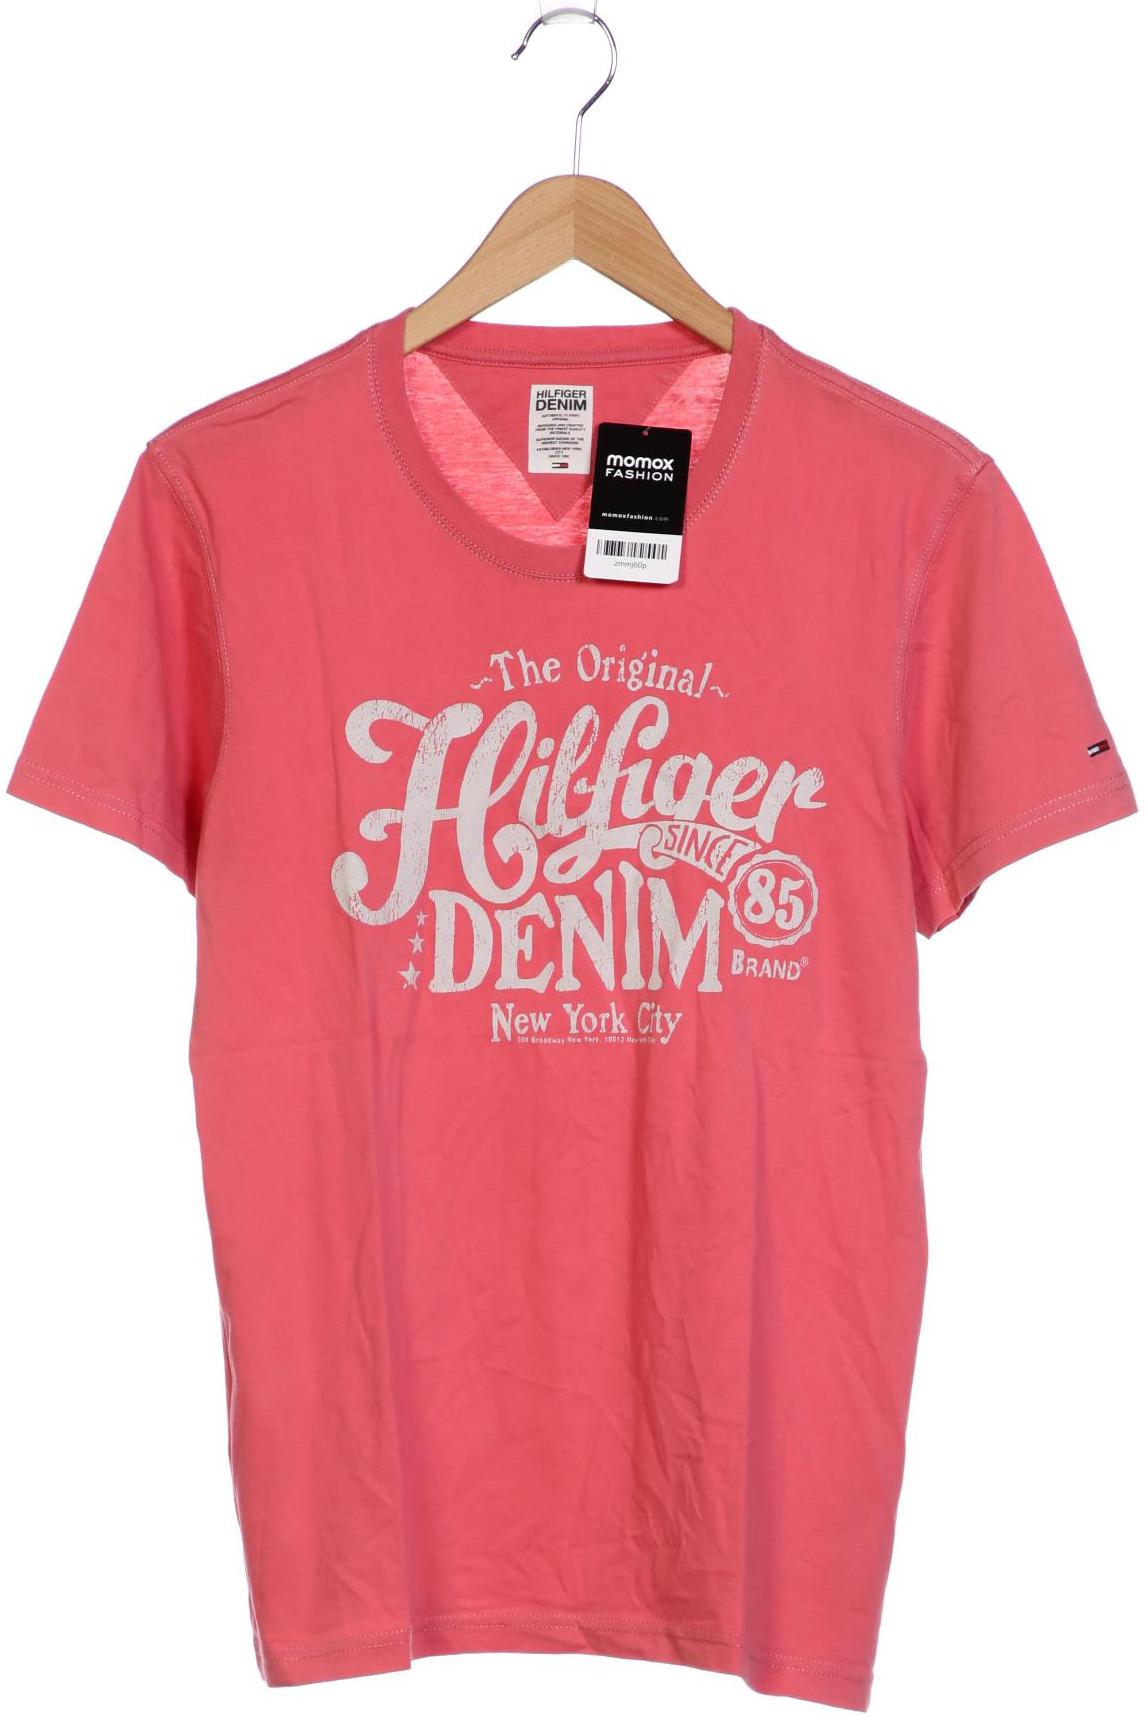 HILFIGER DENIM Herren T-Shirt, pink von Hilfiger Denim